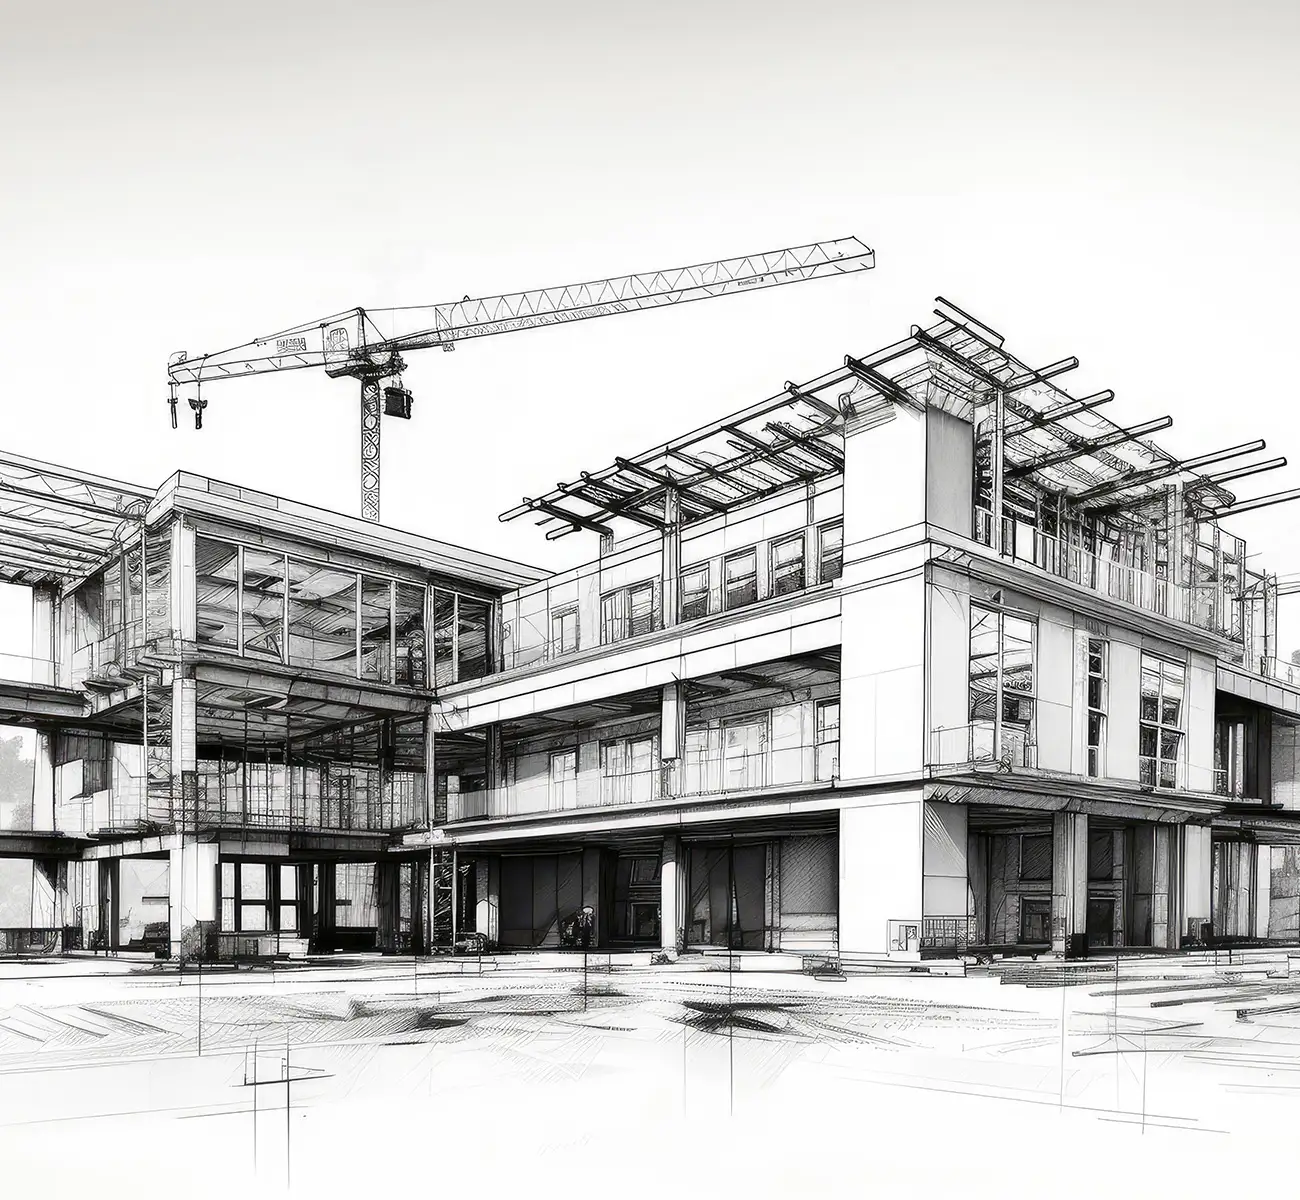 Architektur-Skizze eines modernen mehrgeschossigen Neubaus